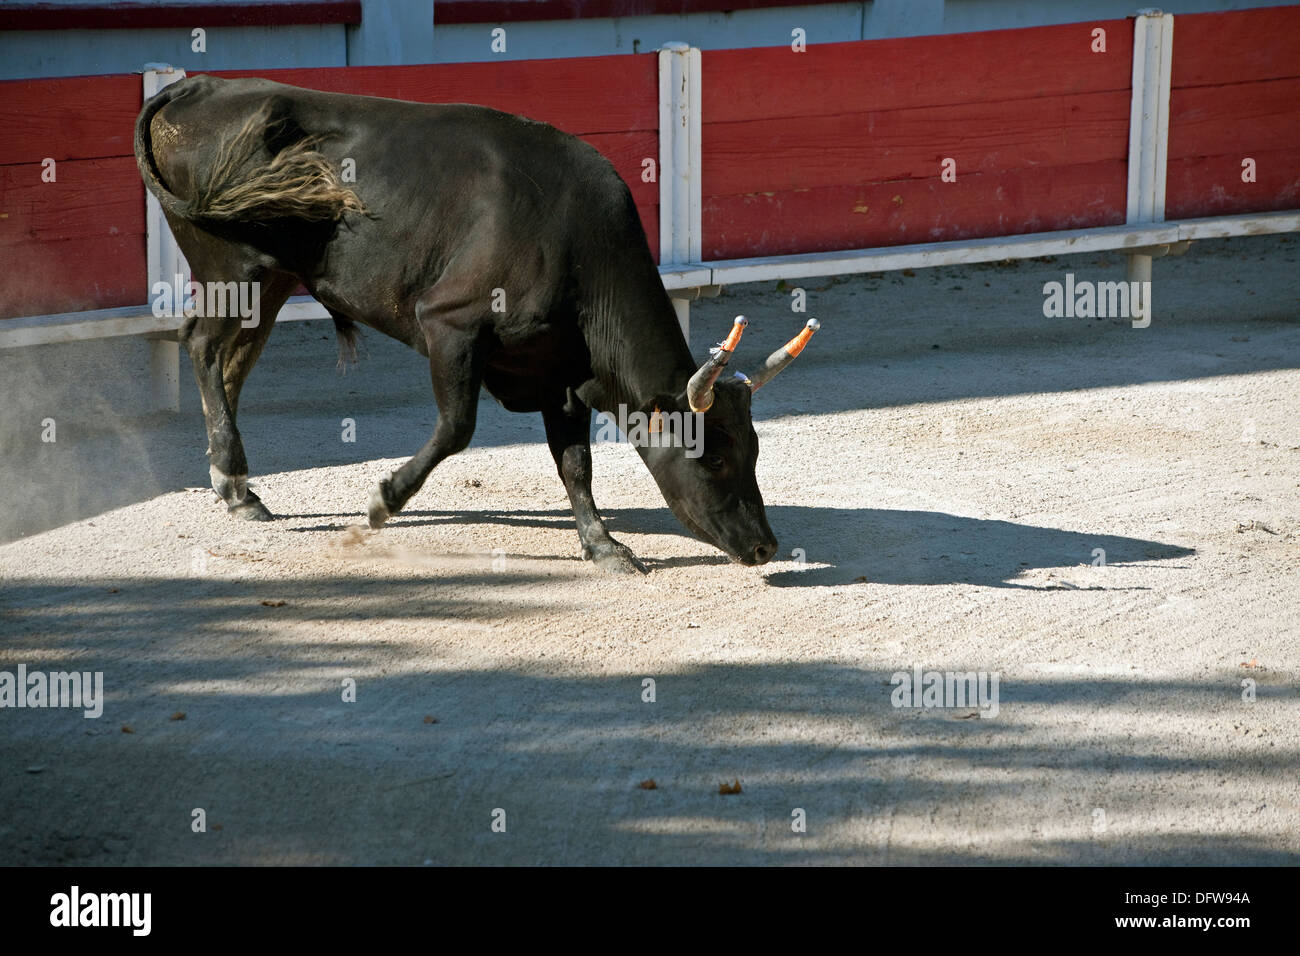 Le Français bull fighting,cours de la Tauromachie Camarguaise,Fontvieille France Bull,prêt à charger, la masse de patte,David Collingwood Banque D'Images